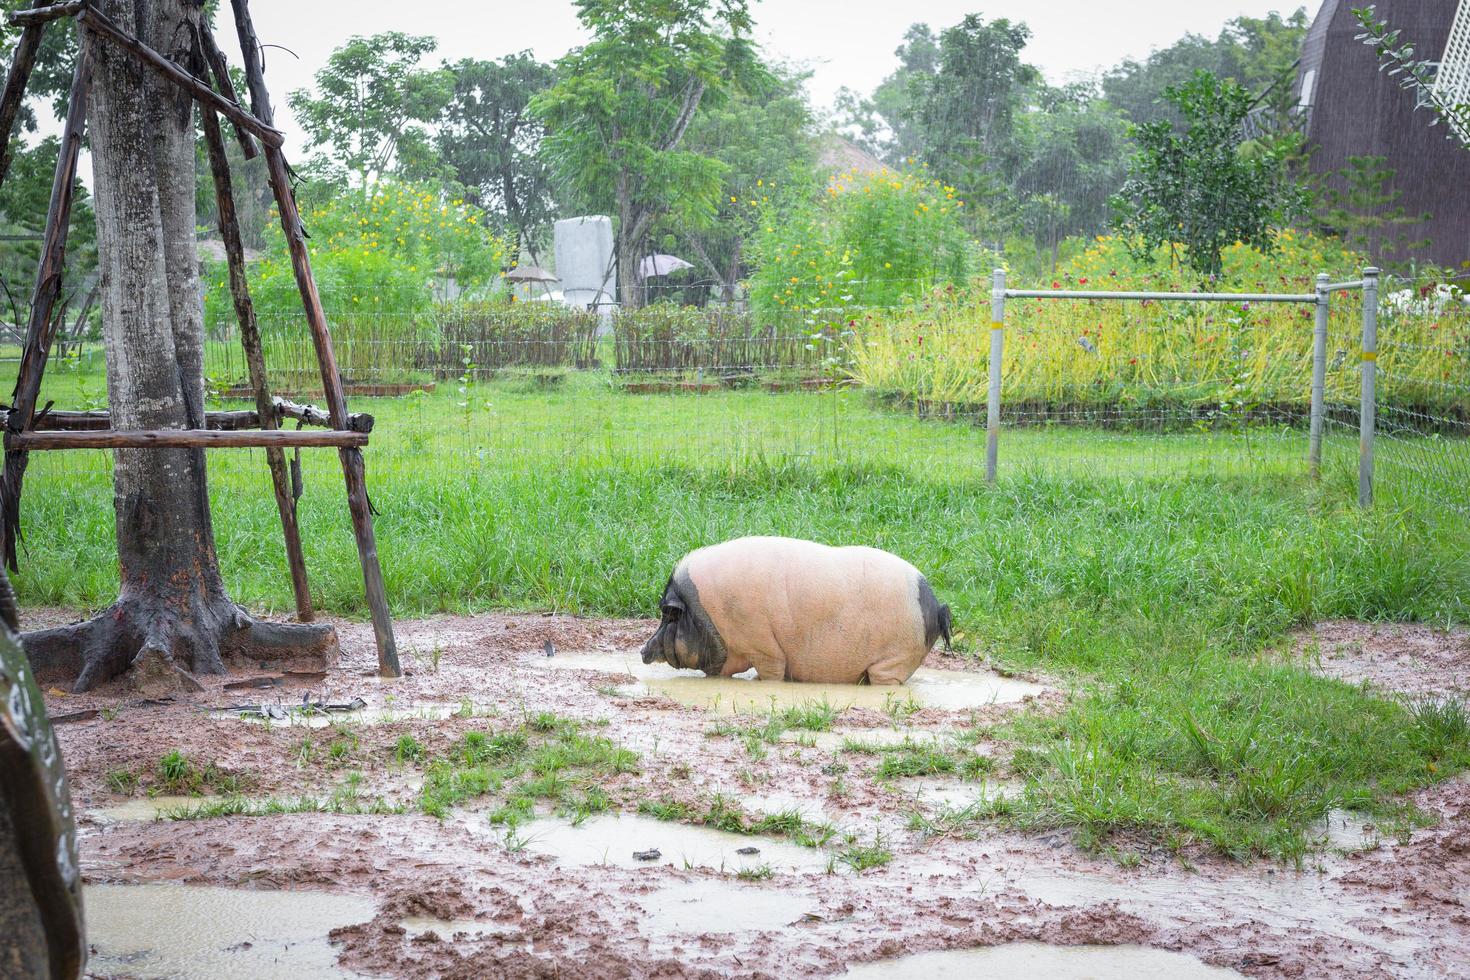 een varken, wit en zwart, stond op een regenachtige dag comfortabel in een modderige put. foto